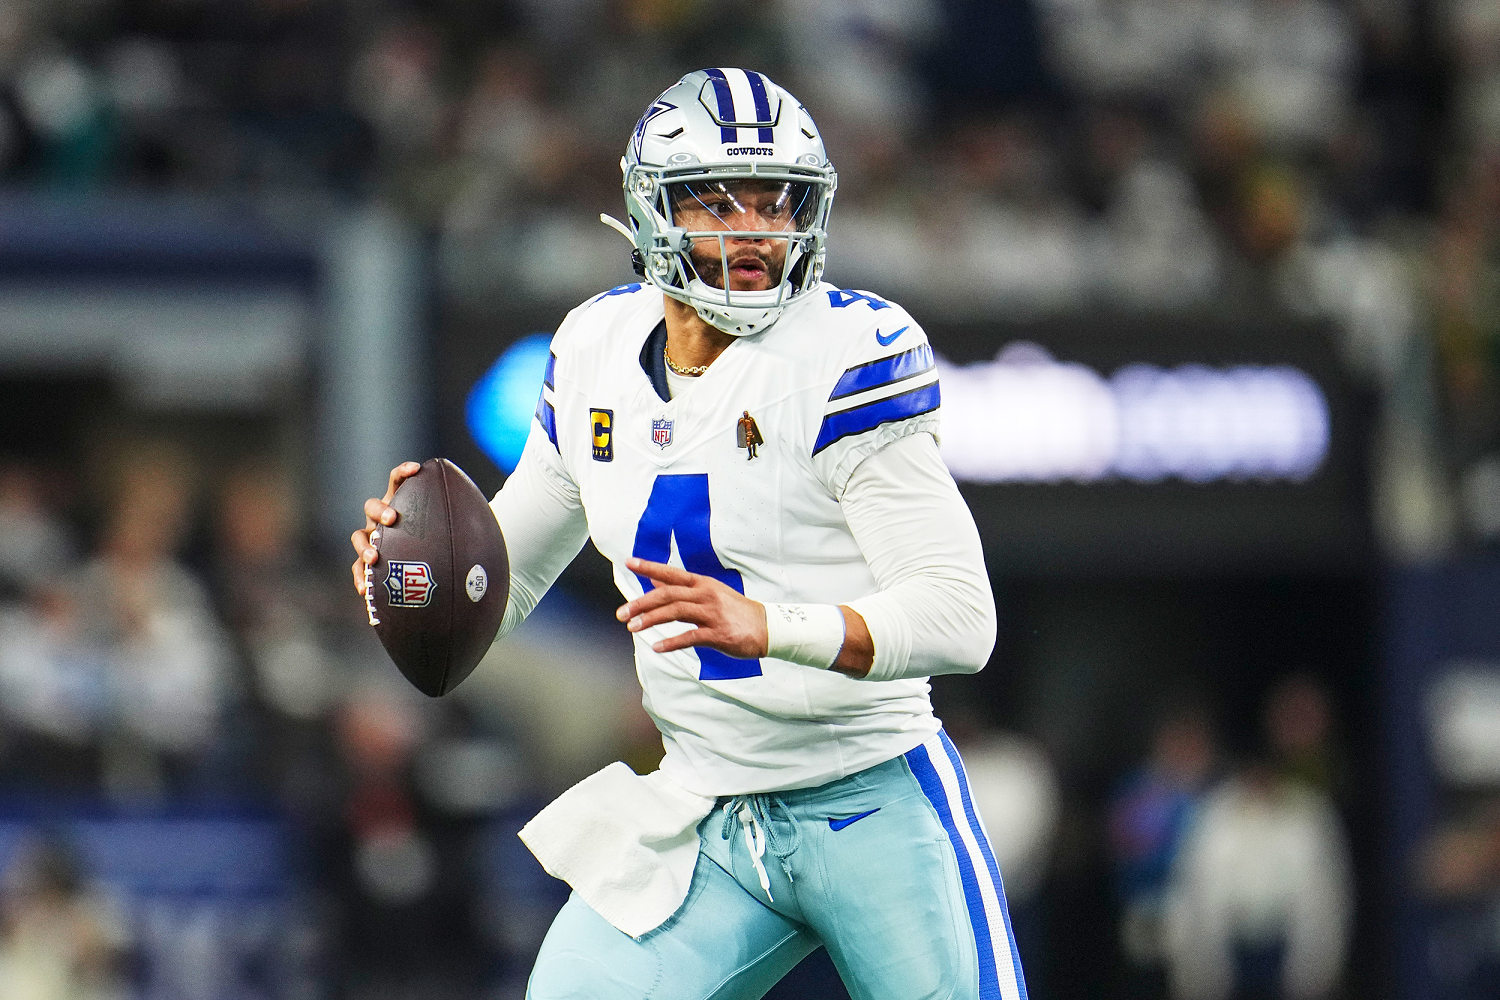 Dallas police won't pursue sexual assault charges against Cowboys' quarterback Dak Prescott